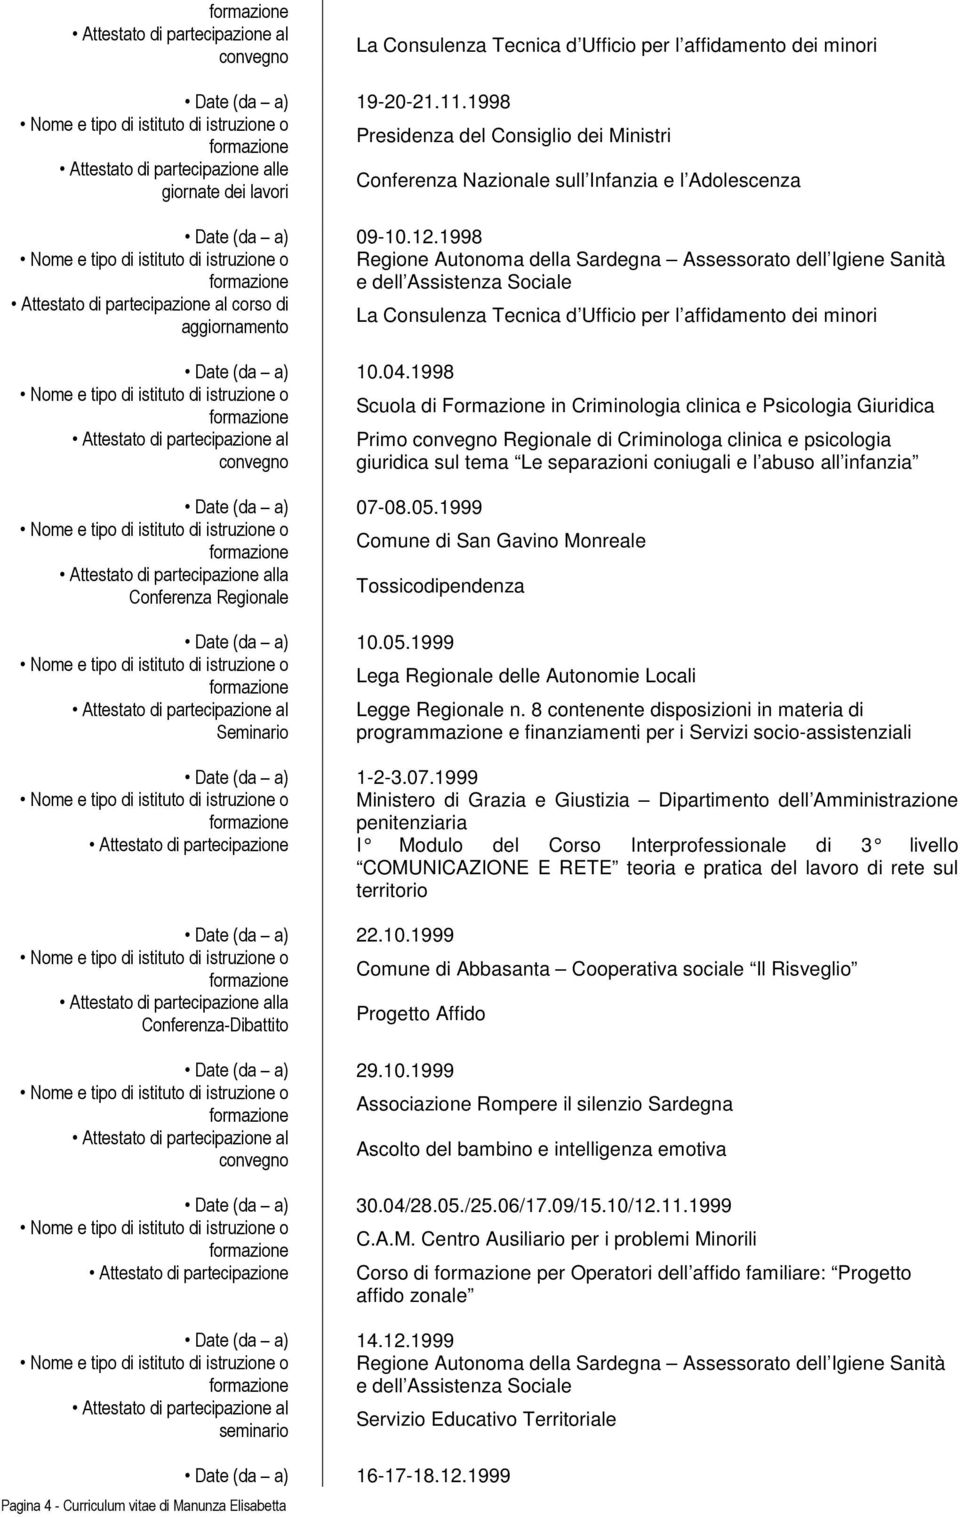 1998 Regione Autonoma della Sardegna Assessorato dell Igiene Sanità e dell Assistenza Sociale corso di aggiornamento La Consulenza Tecnica d Ufficio per l affidamento dei minori Date (da a) 10.04.